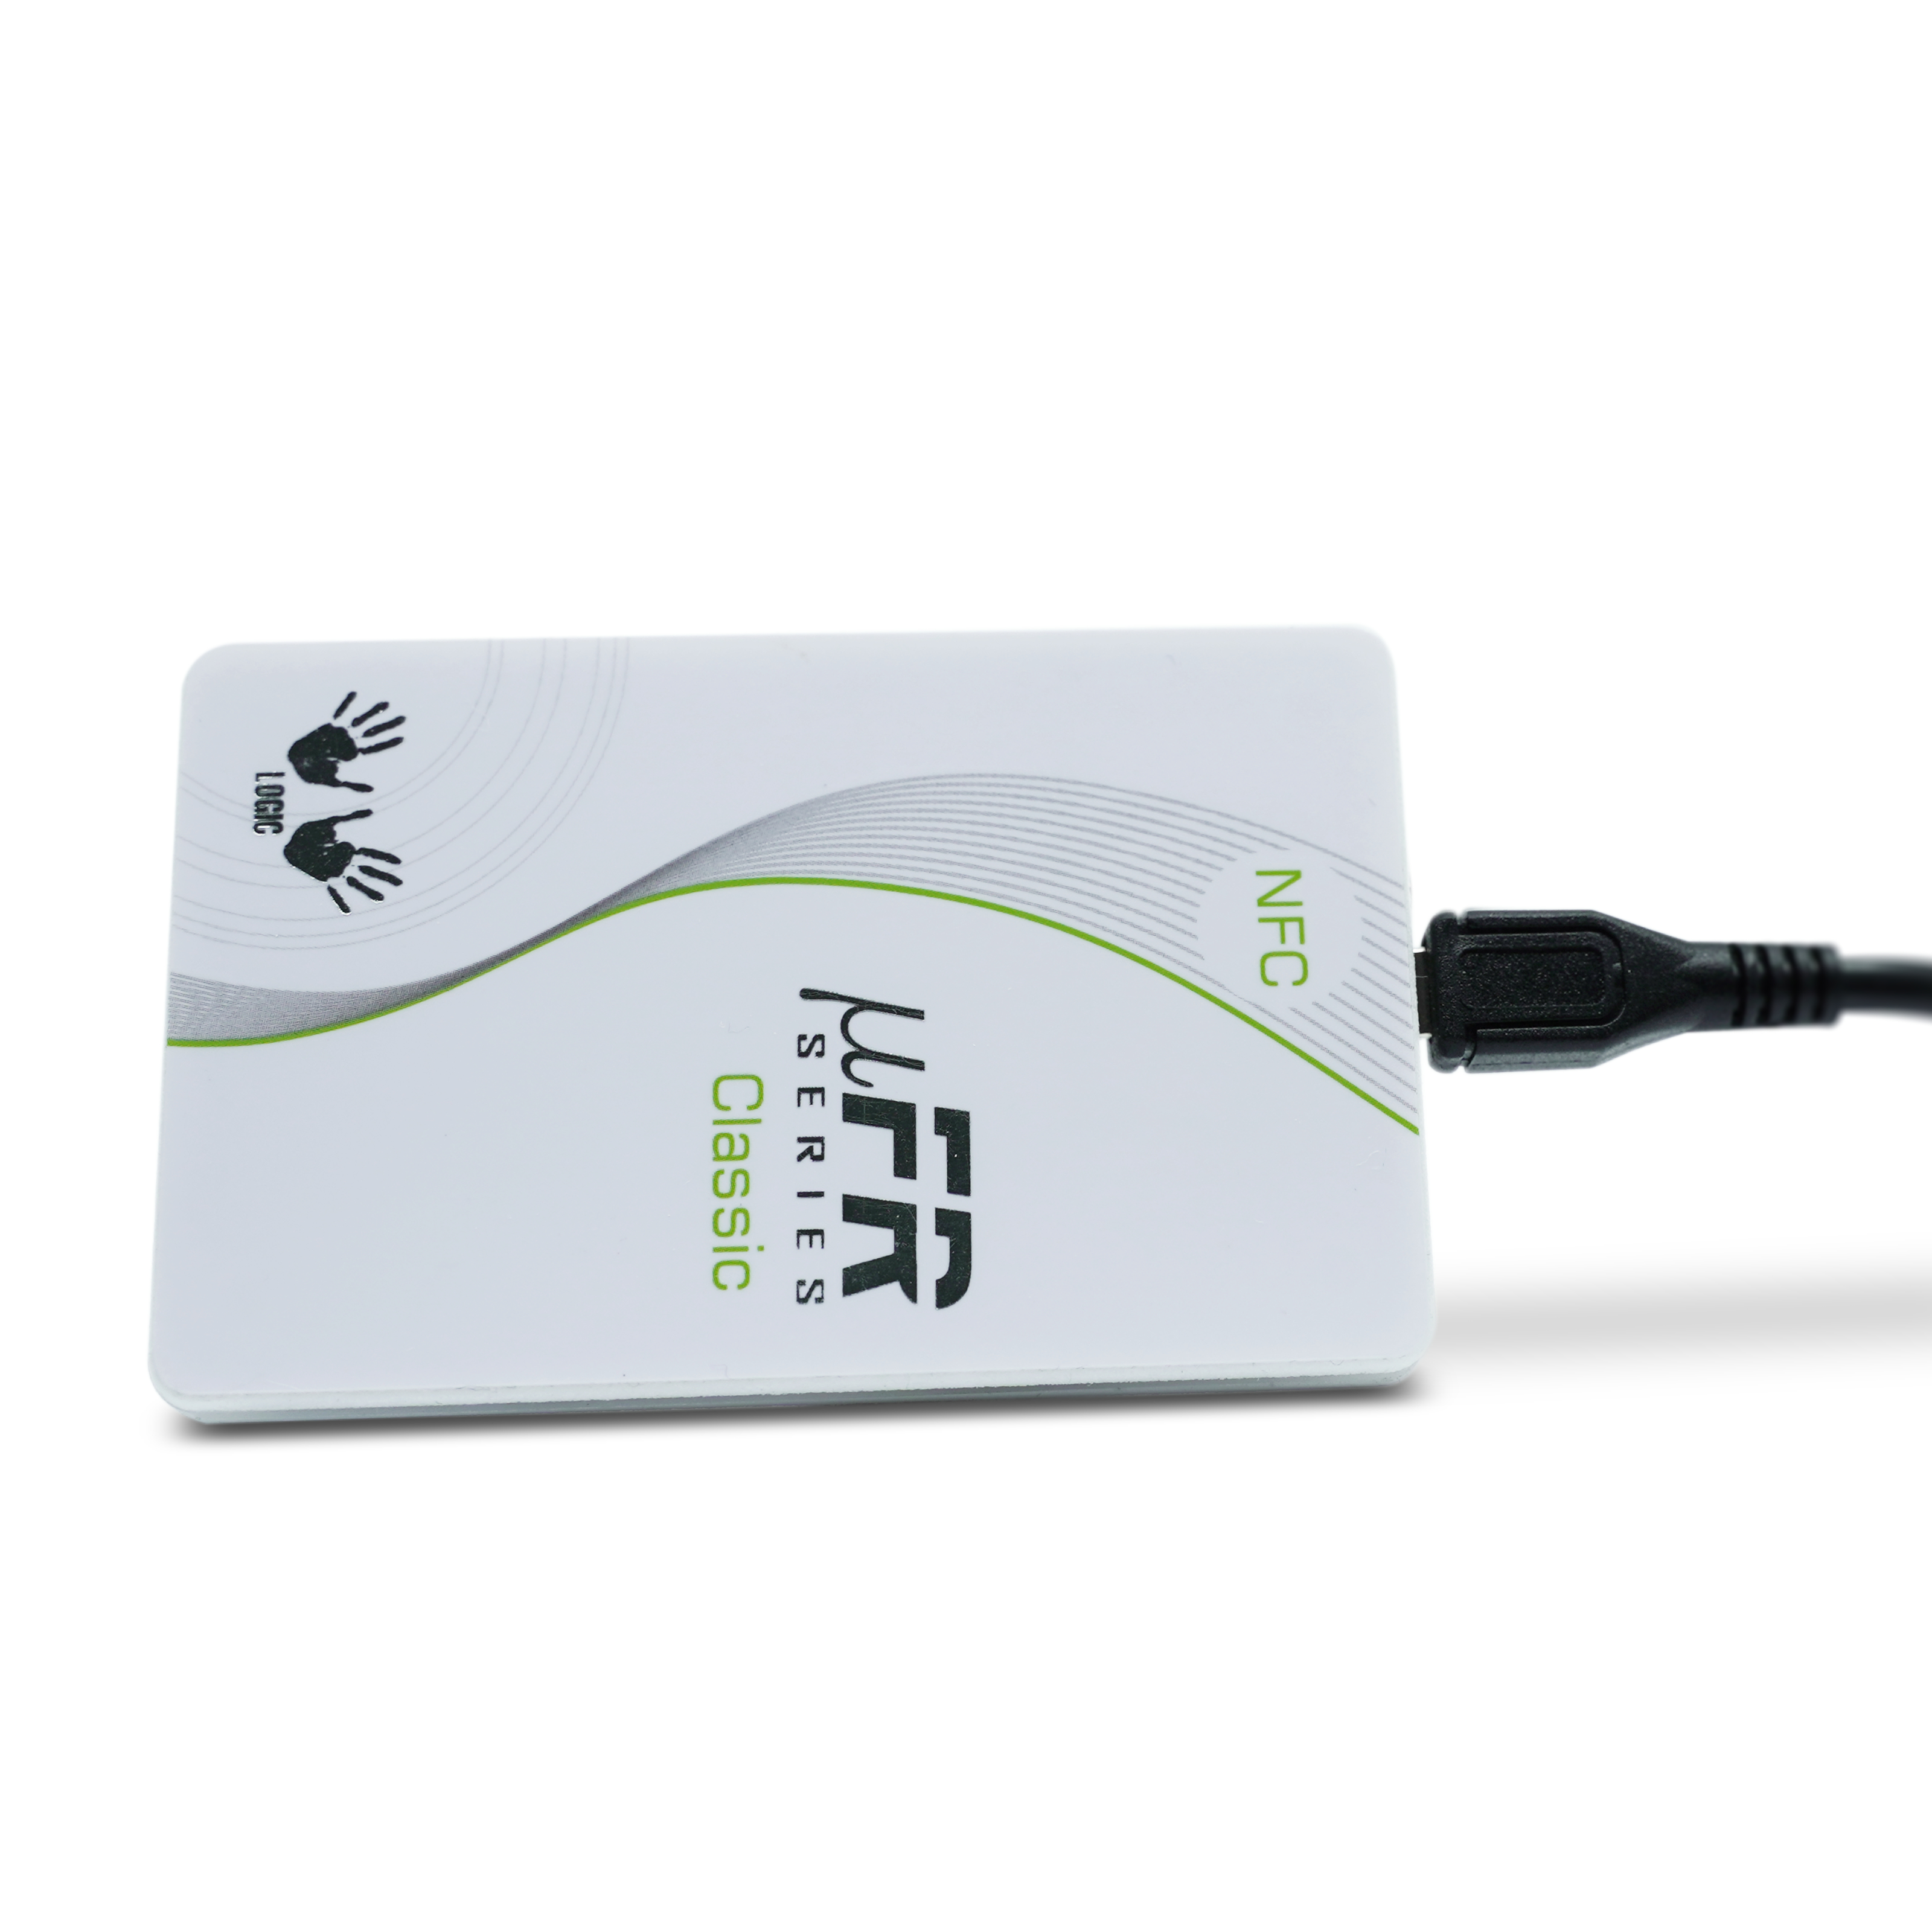 Seitenansicht des NFC Reader/Writer mit angeschlossenem Micro-USB Kabel